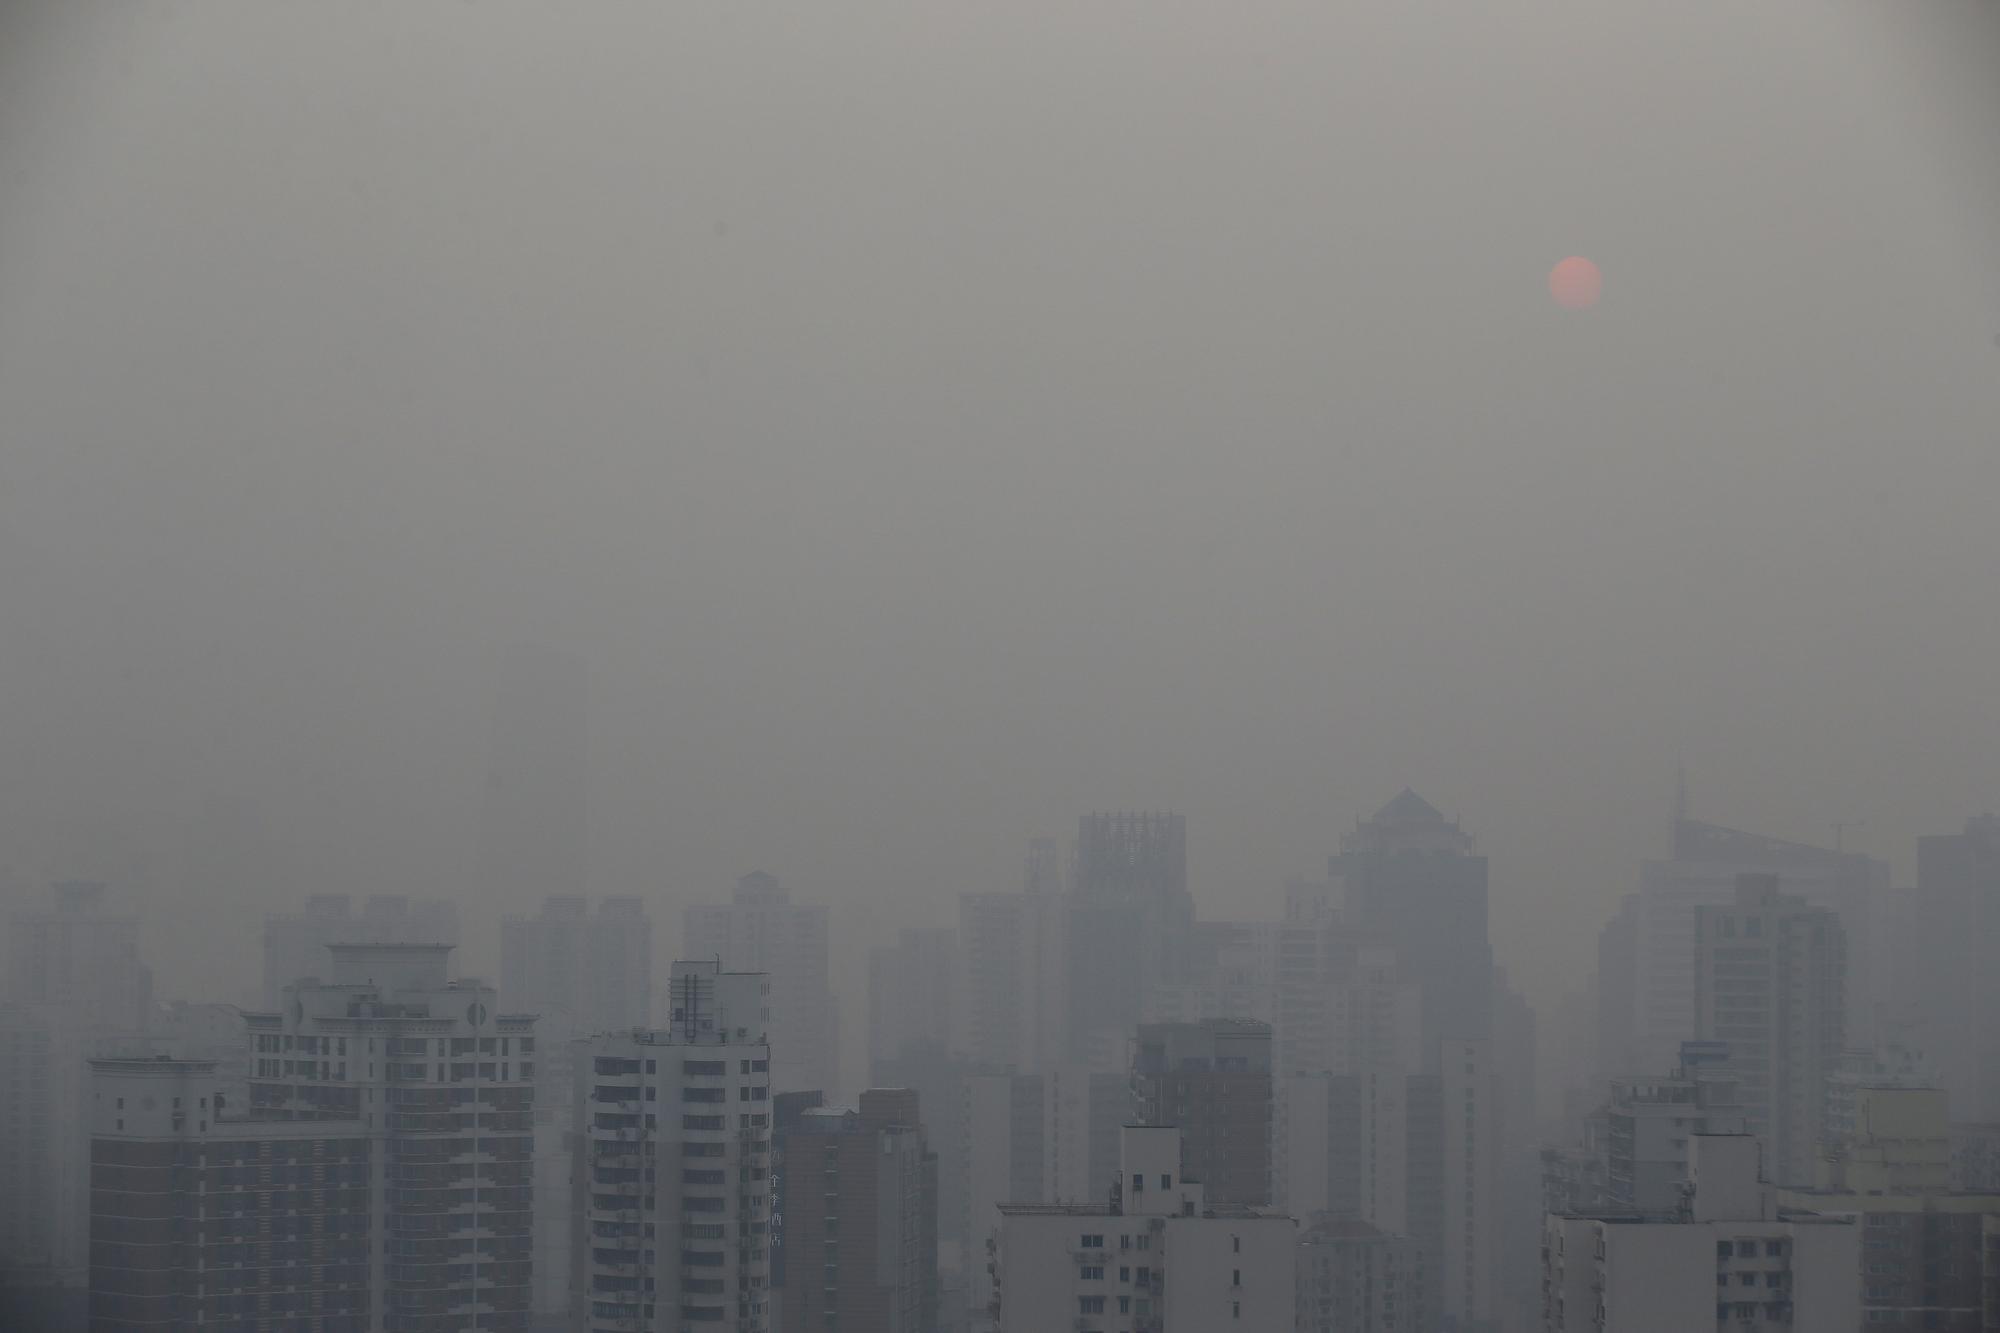 En raison de la pollution atmosphérique, la durée de vie moyenne est réduite de 4,1 ans en Chine. [Reuters - Aly Song]